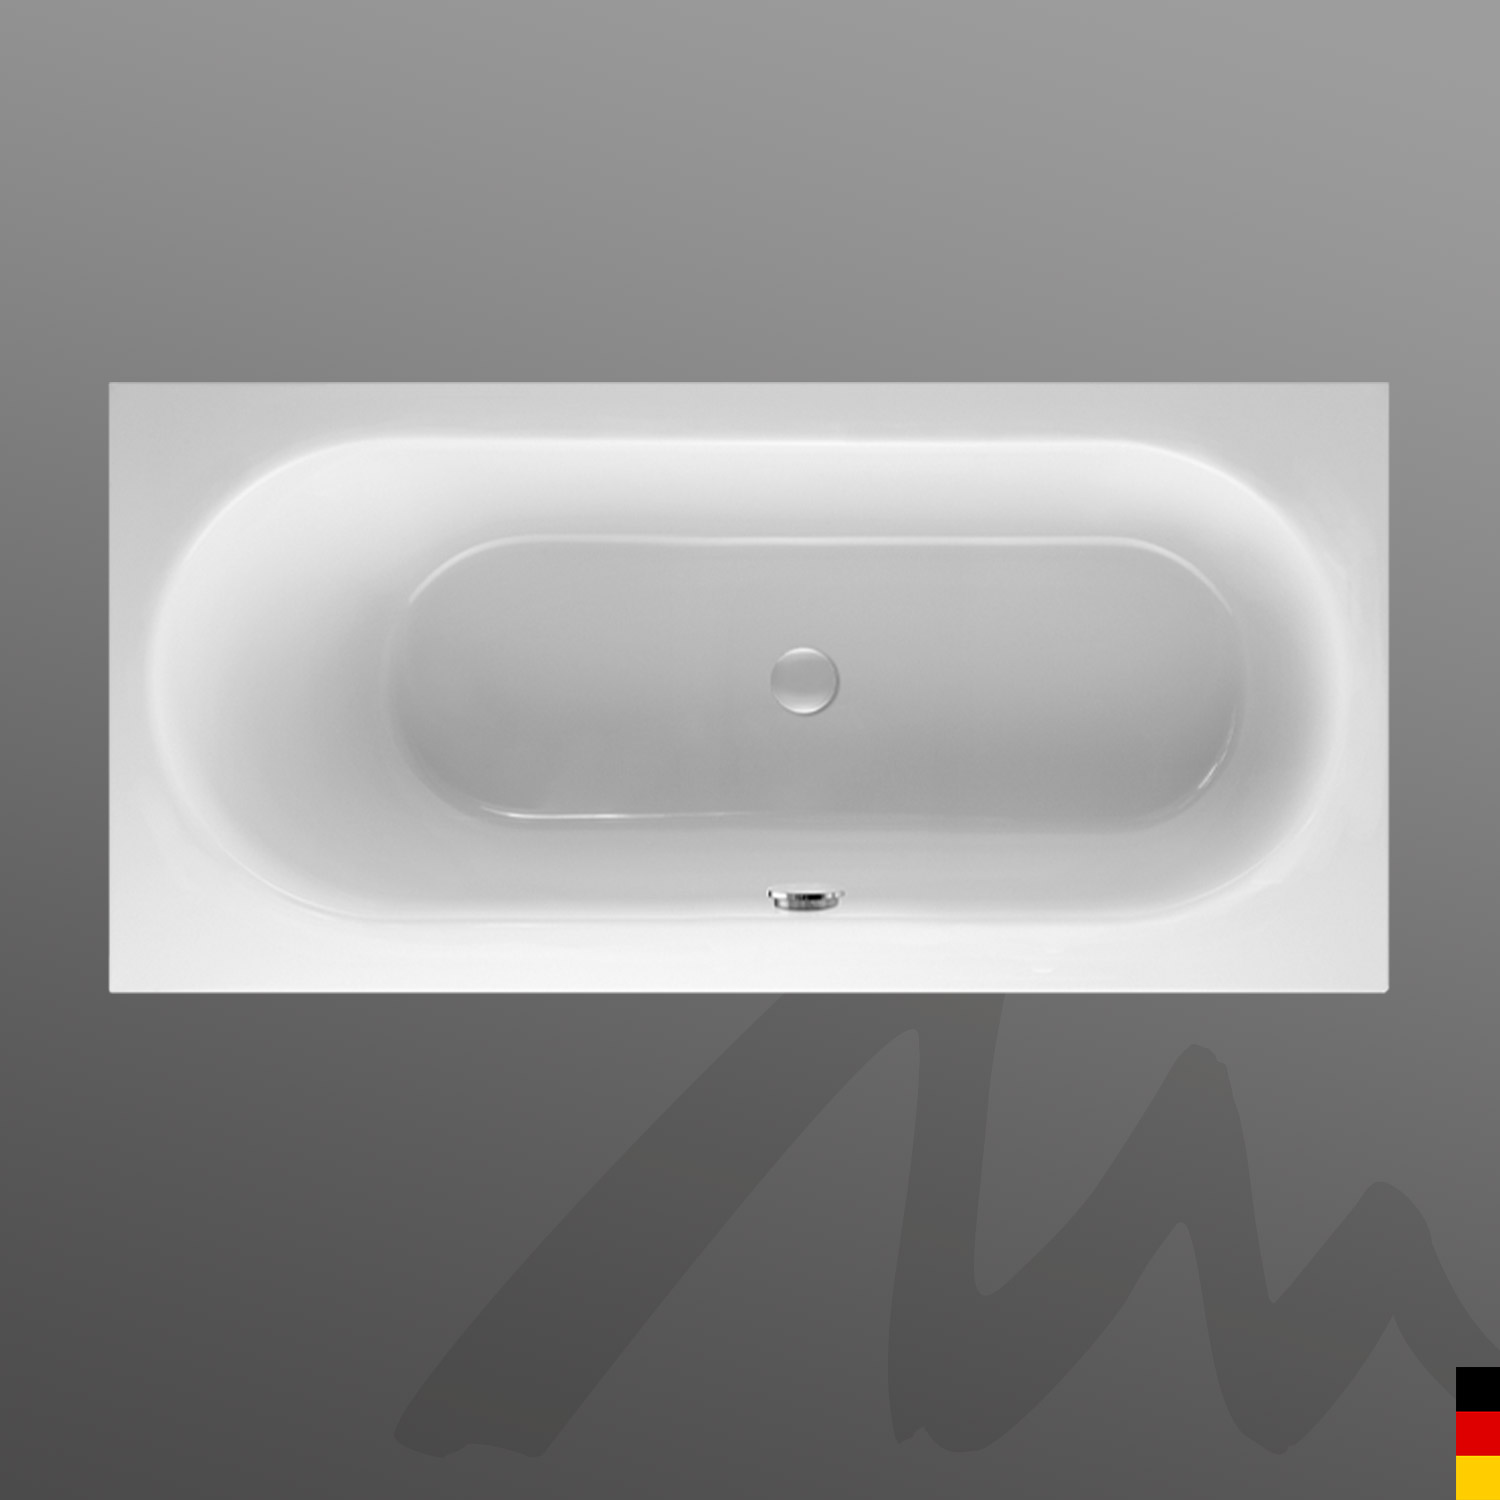 Mauersberger Badewanne Rechteck Ausana 170/75 uno  170x75x44cm  Farbe:rein-weiß